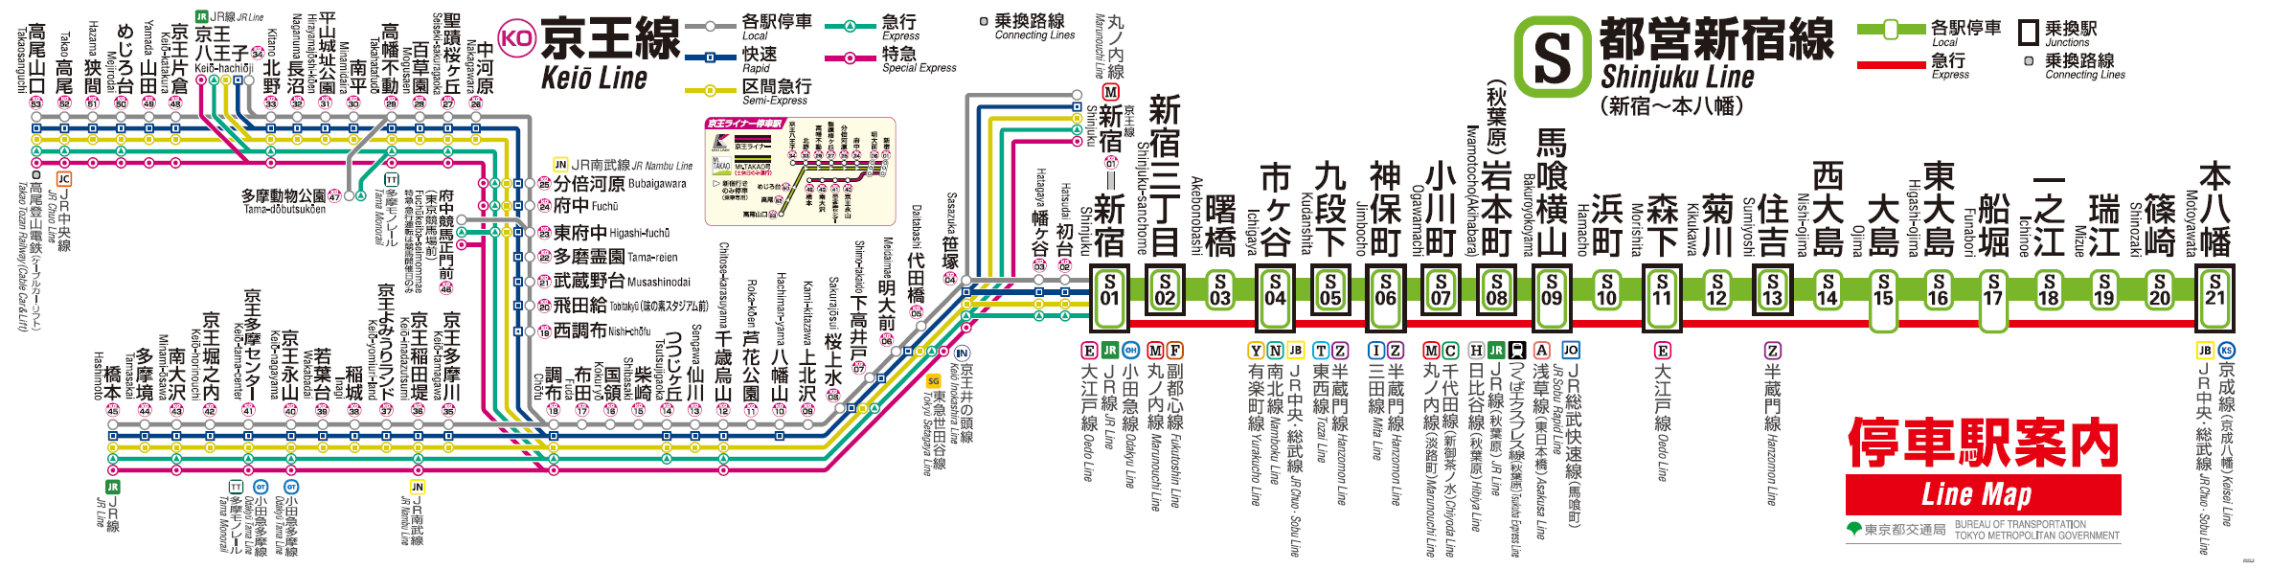 新宿線 相互直通運転 東京都交通局